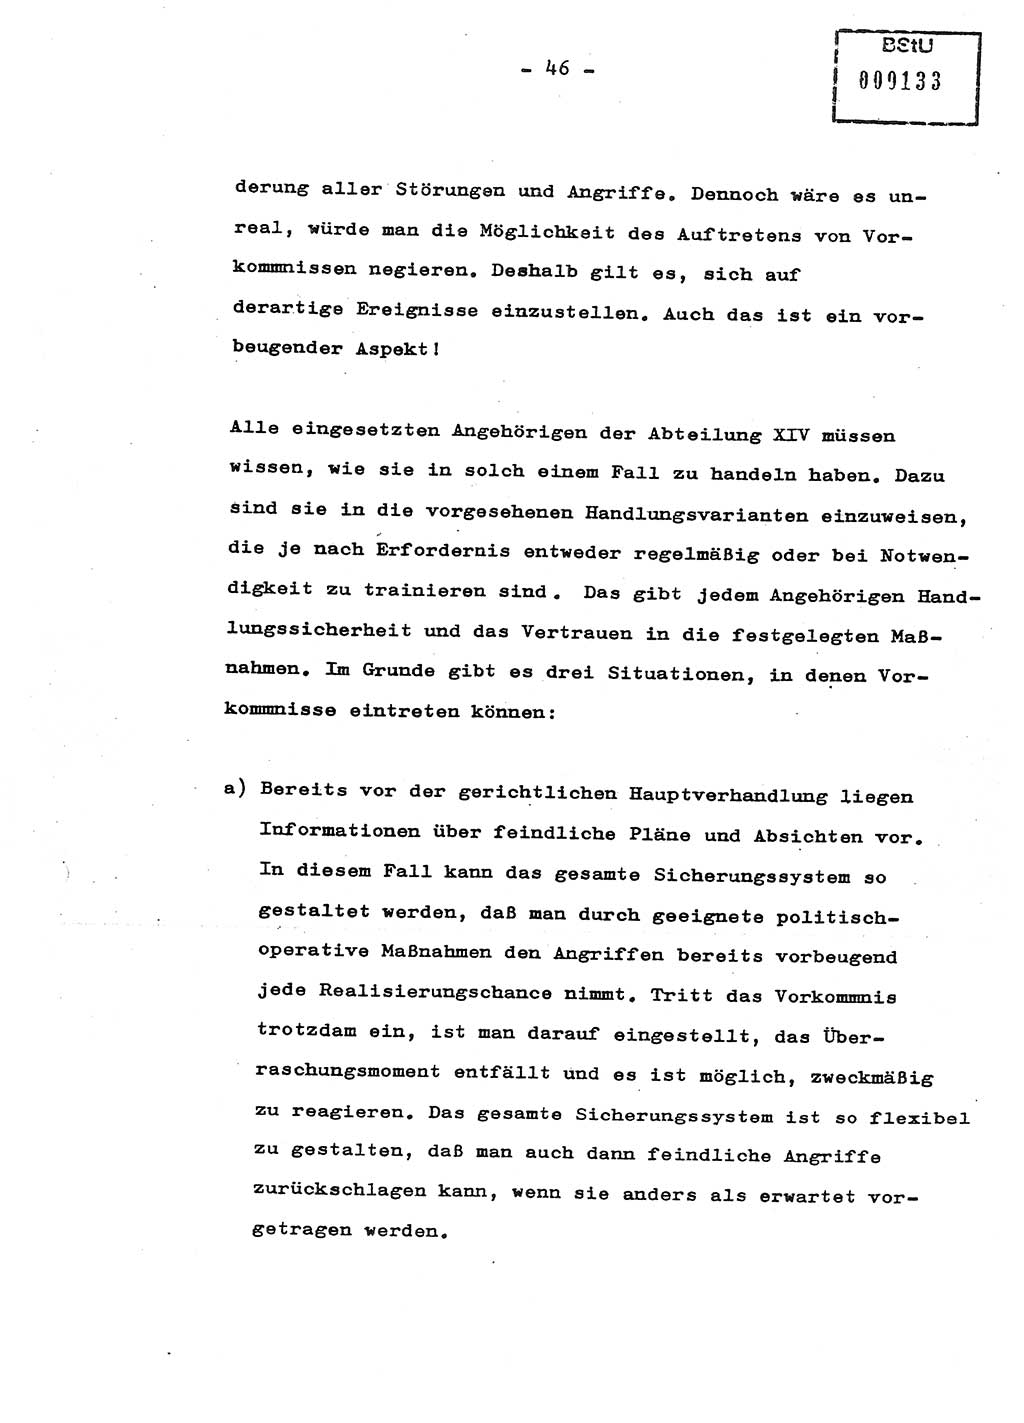 Schulungsmaterial Exemplar-Nr.: 8, Ministerium für Staatssicherheit [Deutsche Demokratische Republik (DDR)], Abteilung (Abt.) ⅩⅣ, Berlin 1987, Seite 46 (Sch.-Mat. Expl. 8 MfS DDR Abt. ⅩⅣ /87 1987, S. 46)